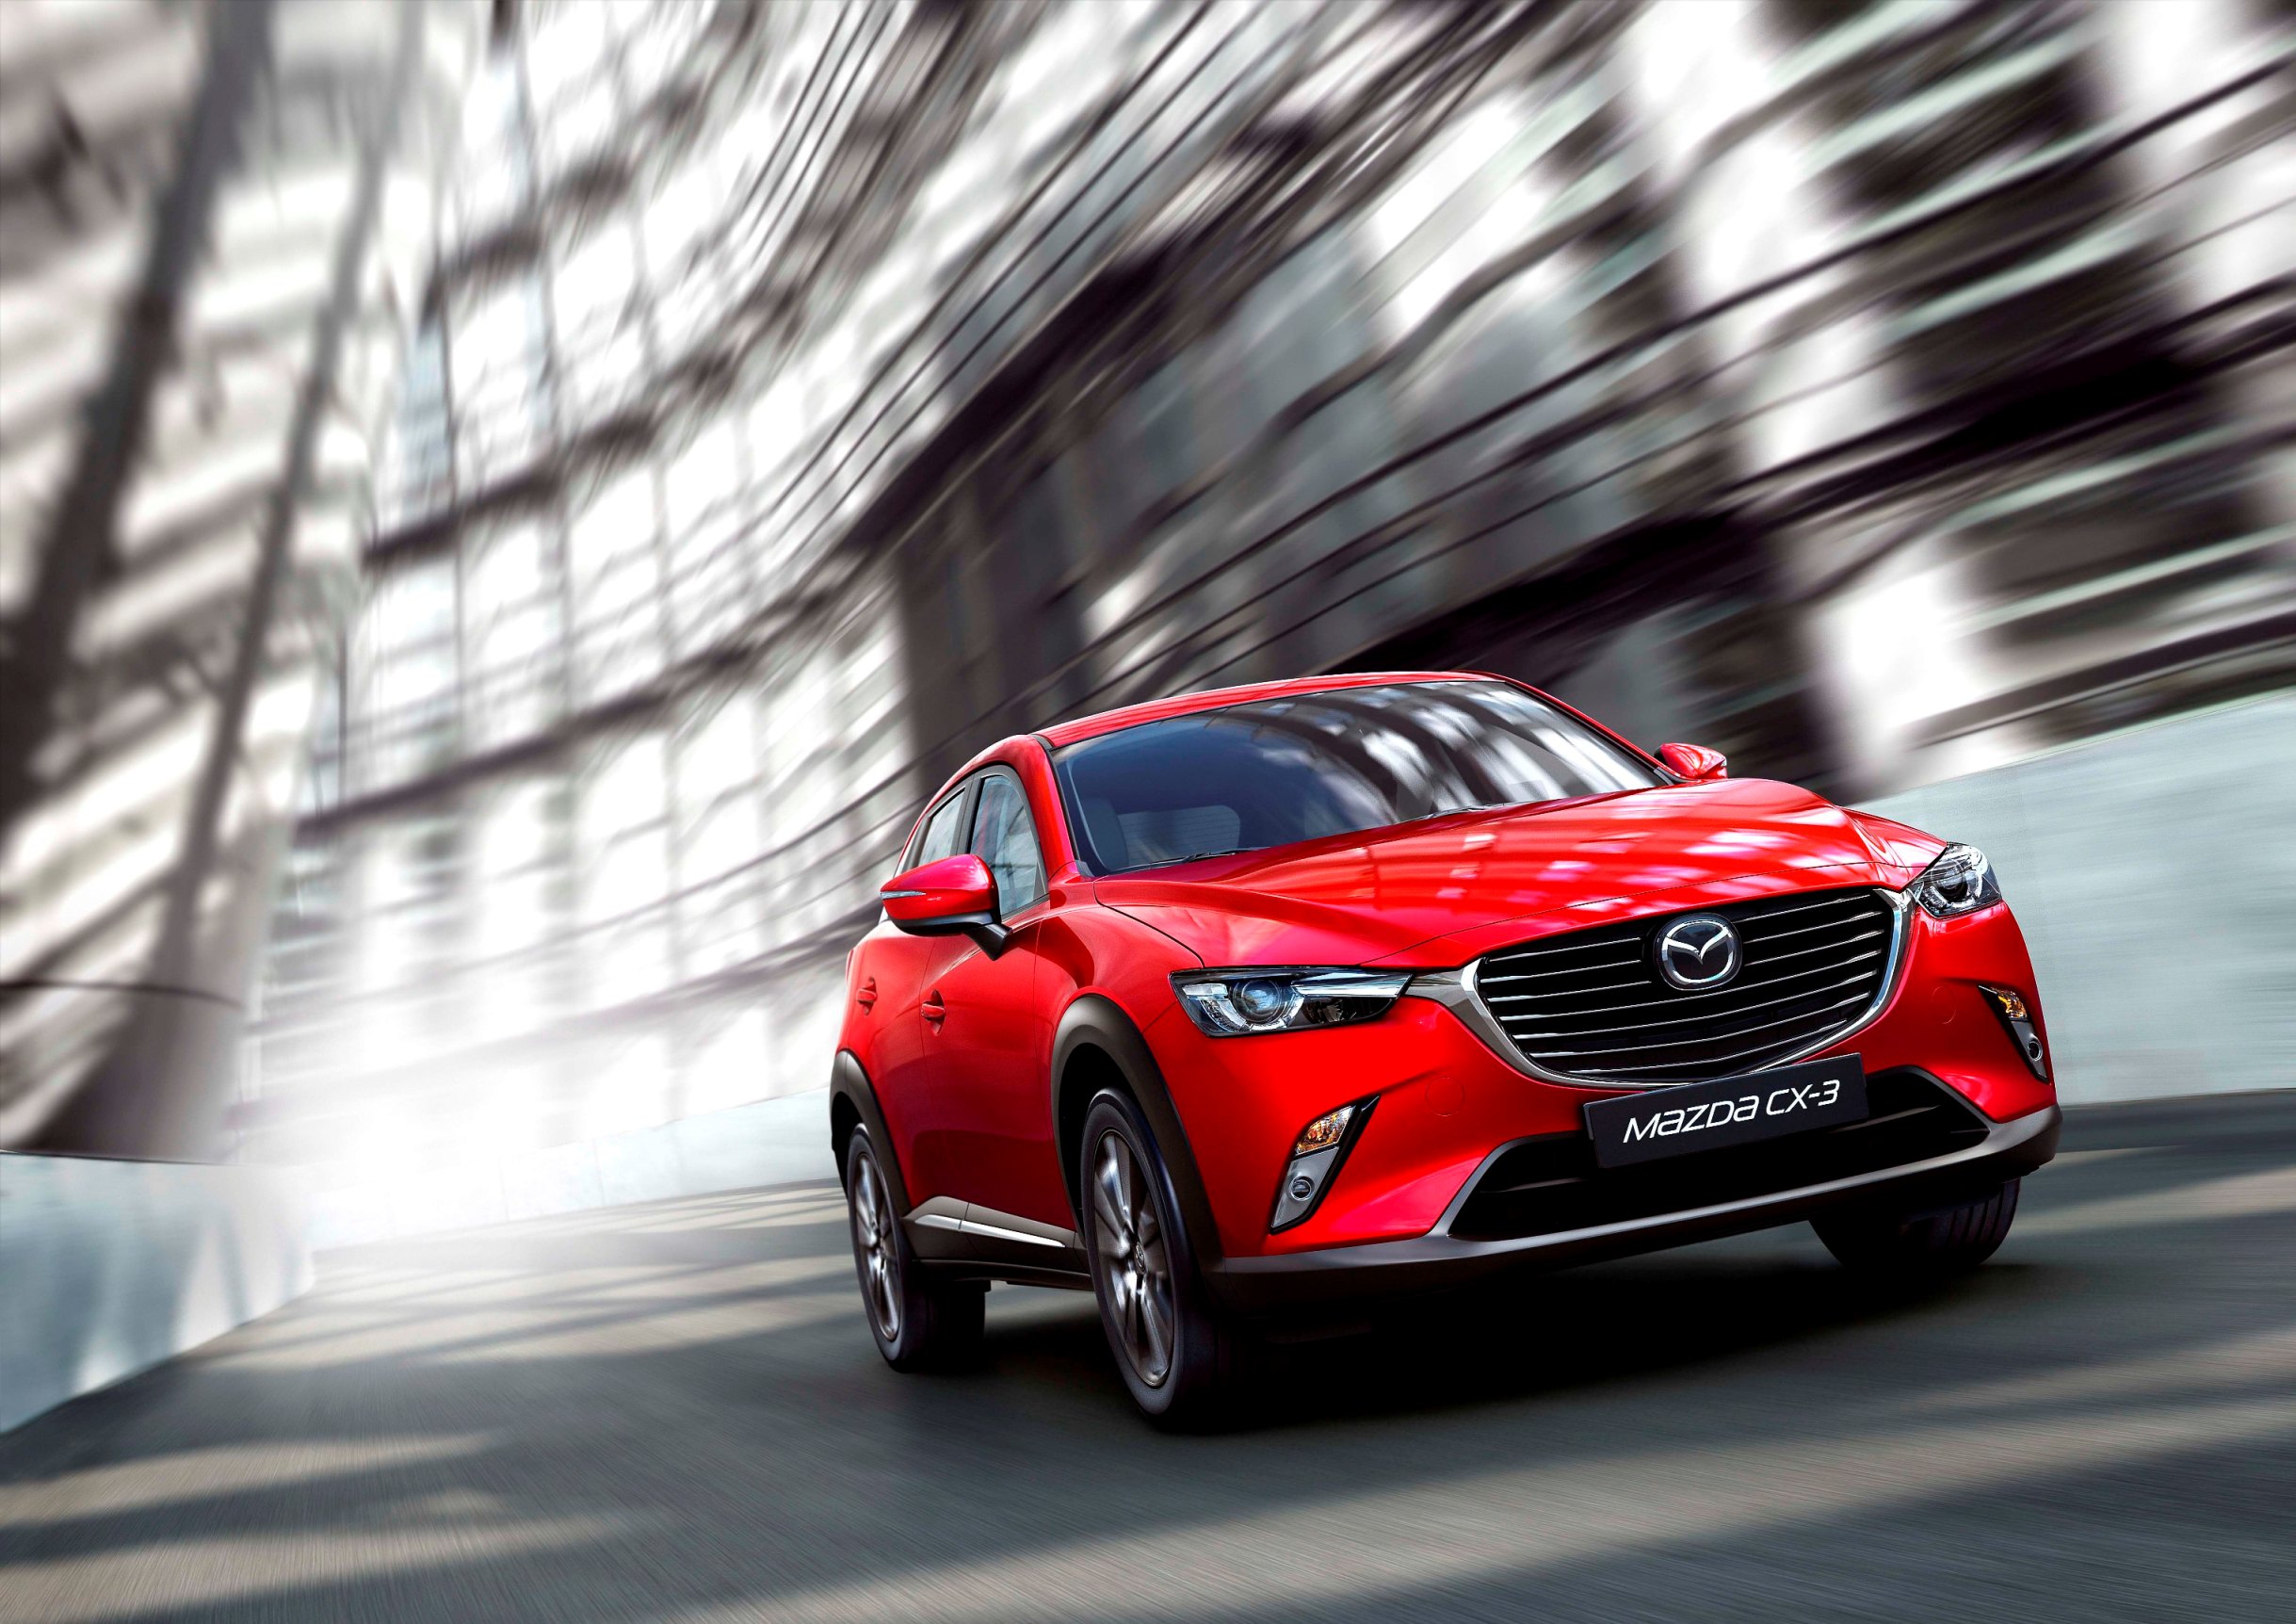 車款規格 Cx 3 Mazda 規格查詢 自由電子報汽車頻道